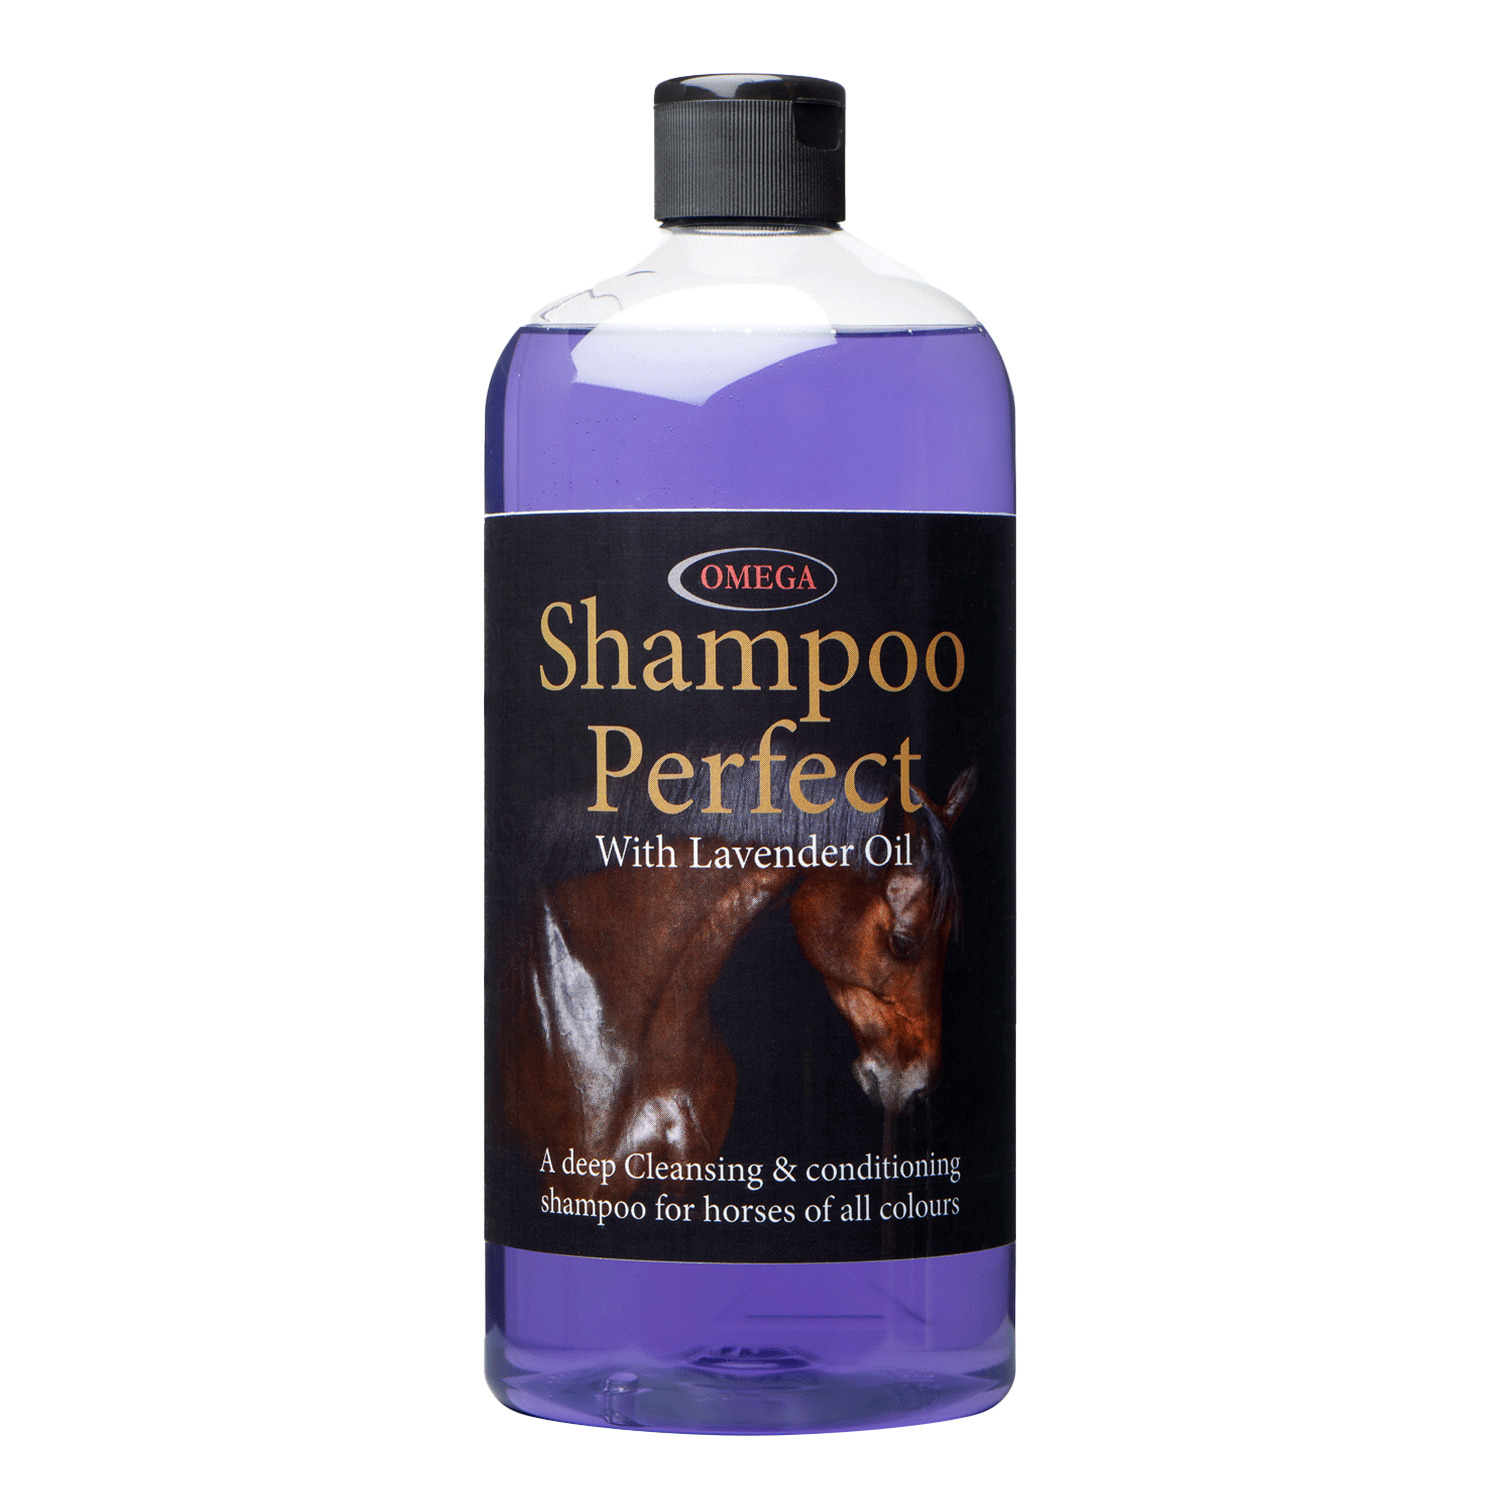 Omega Shampoo Perfect